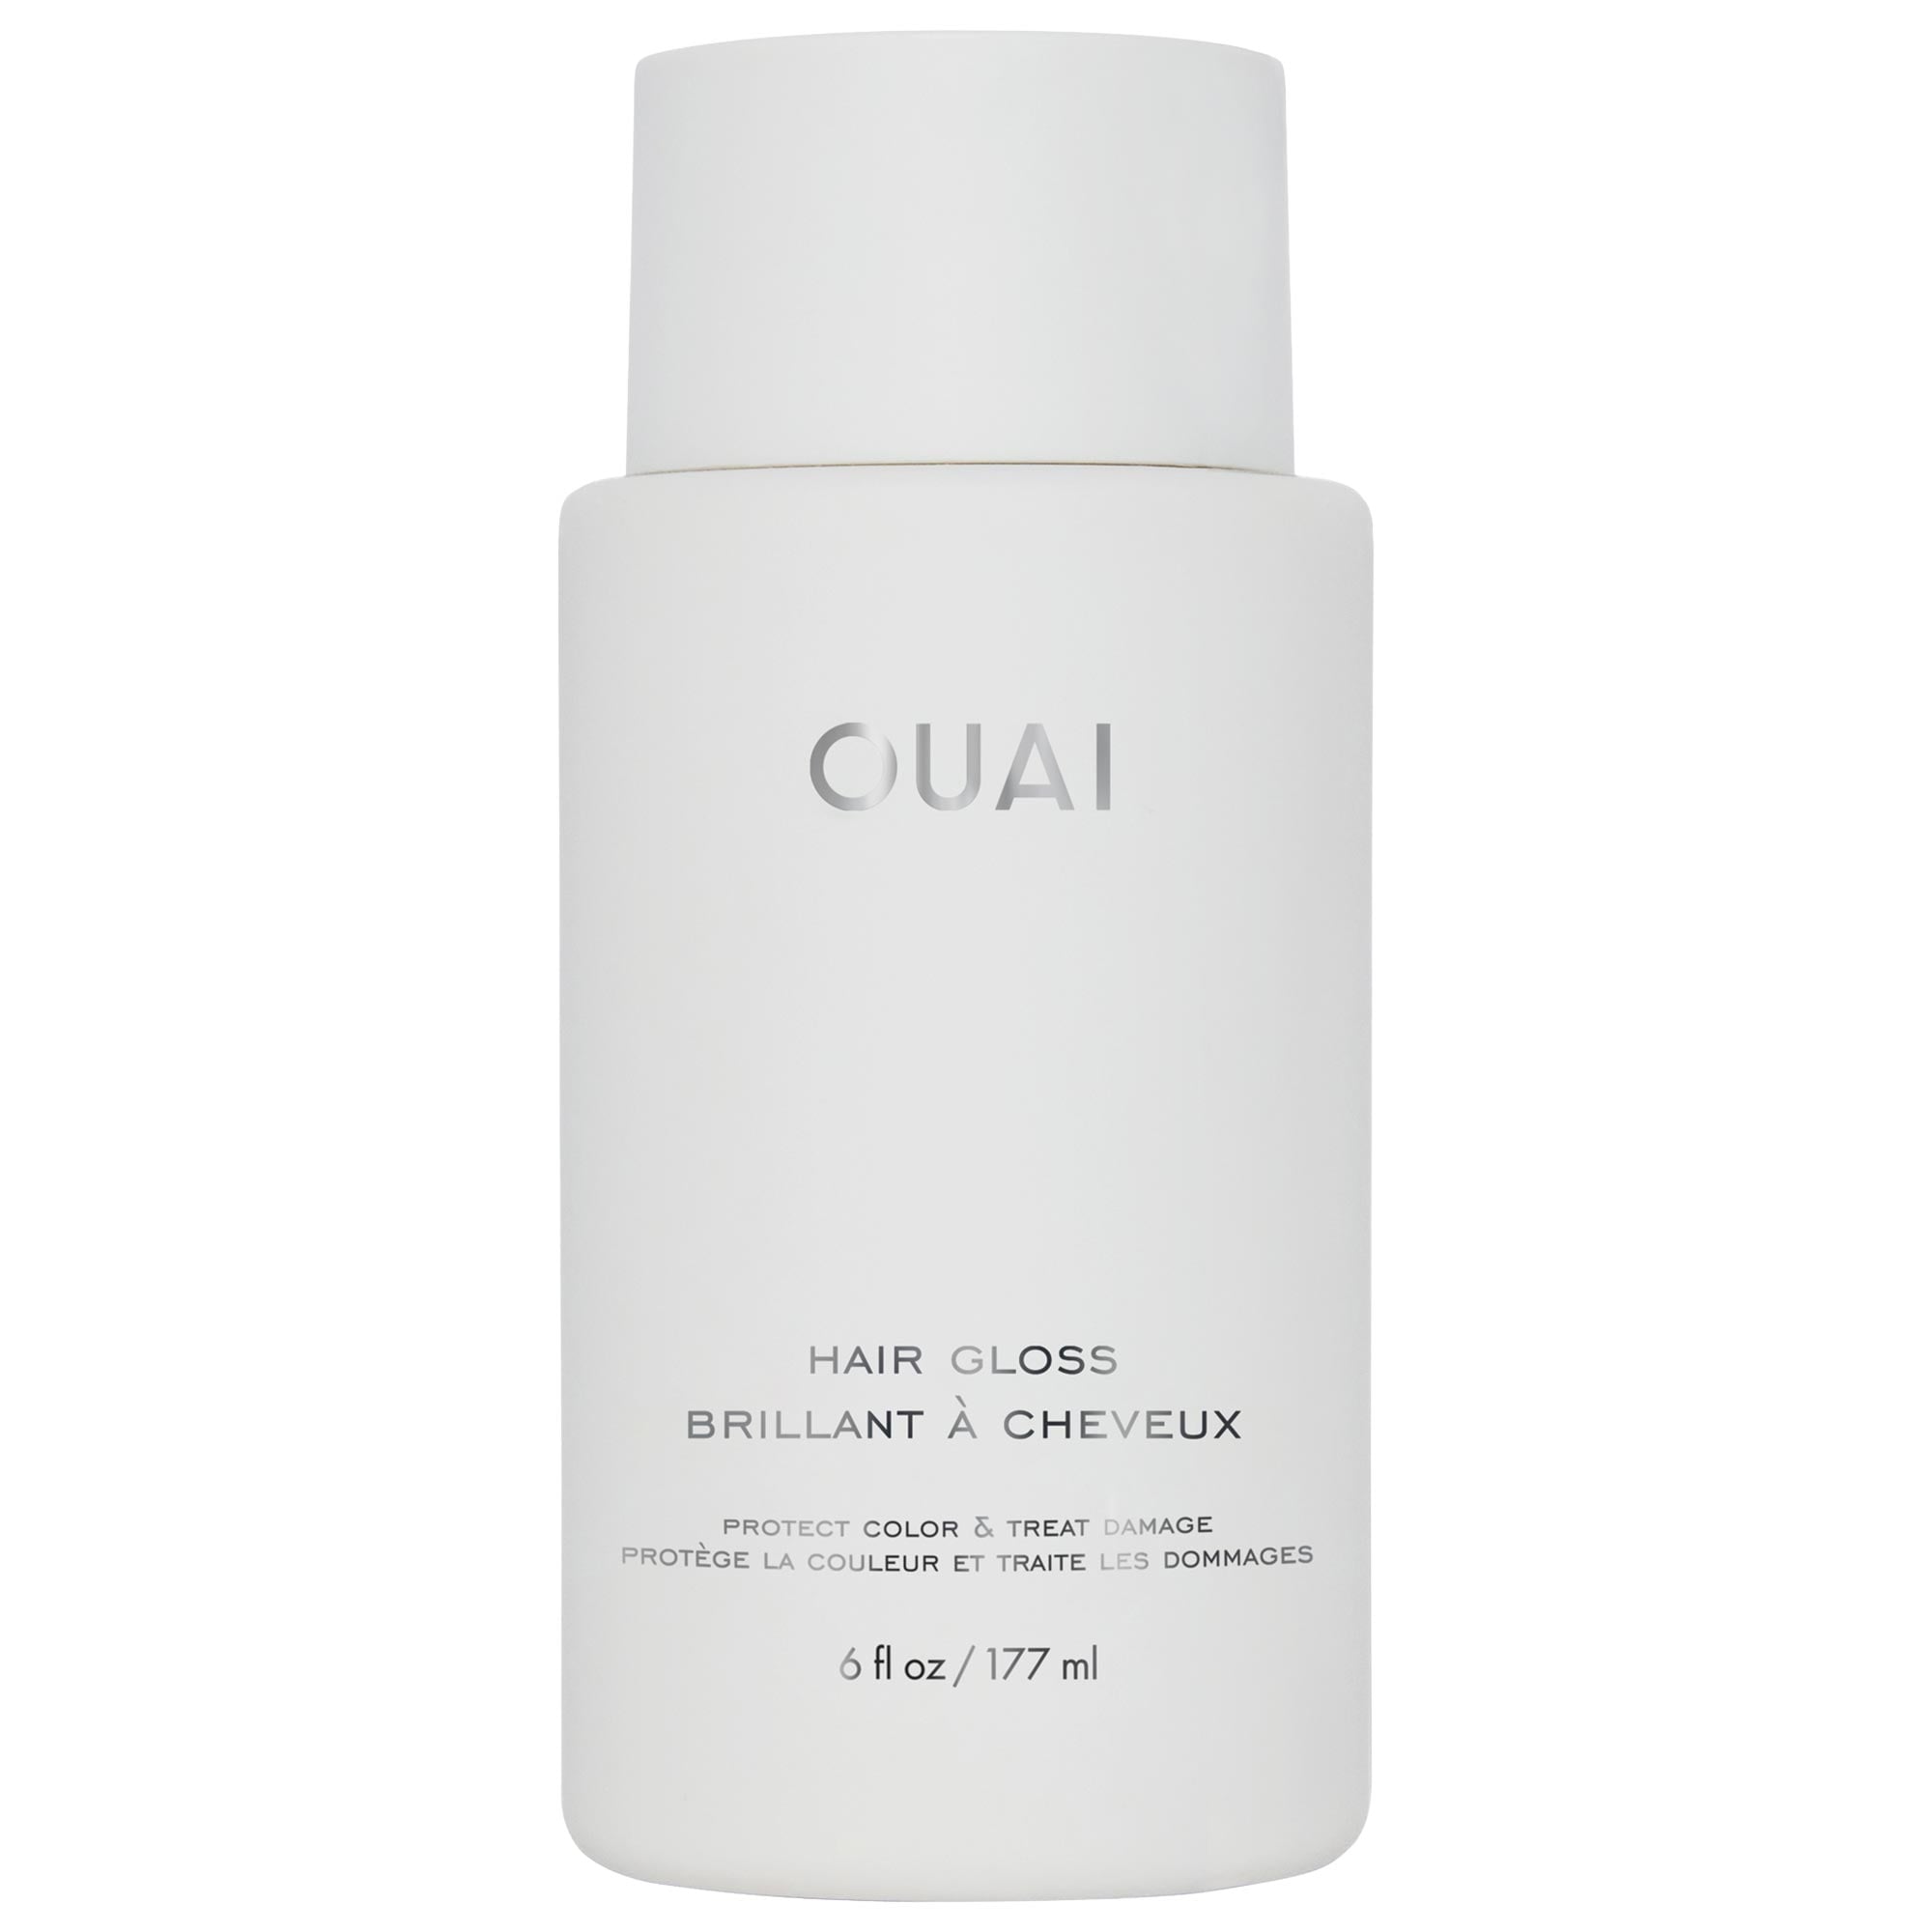 Hair Gloss In-Shower Shine Treatment OUAI